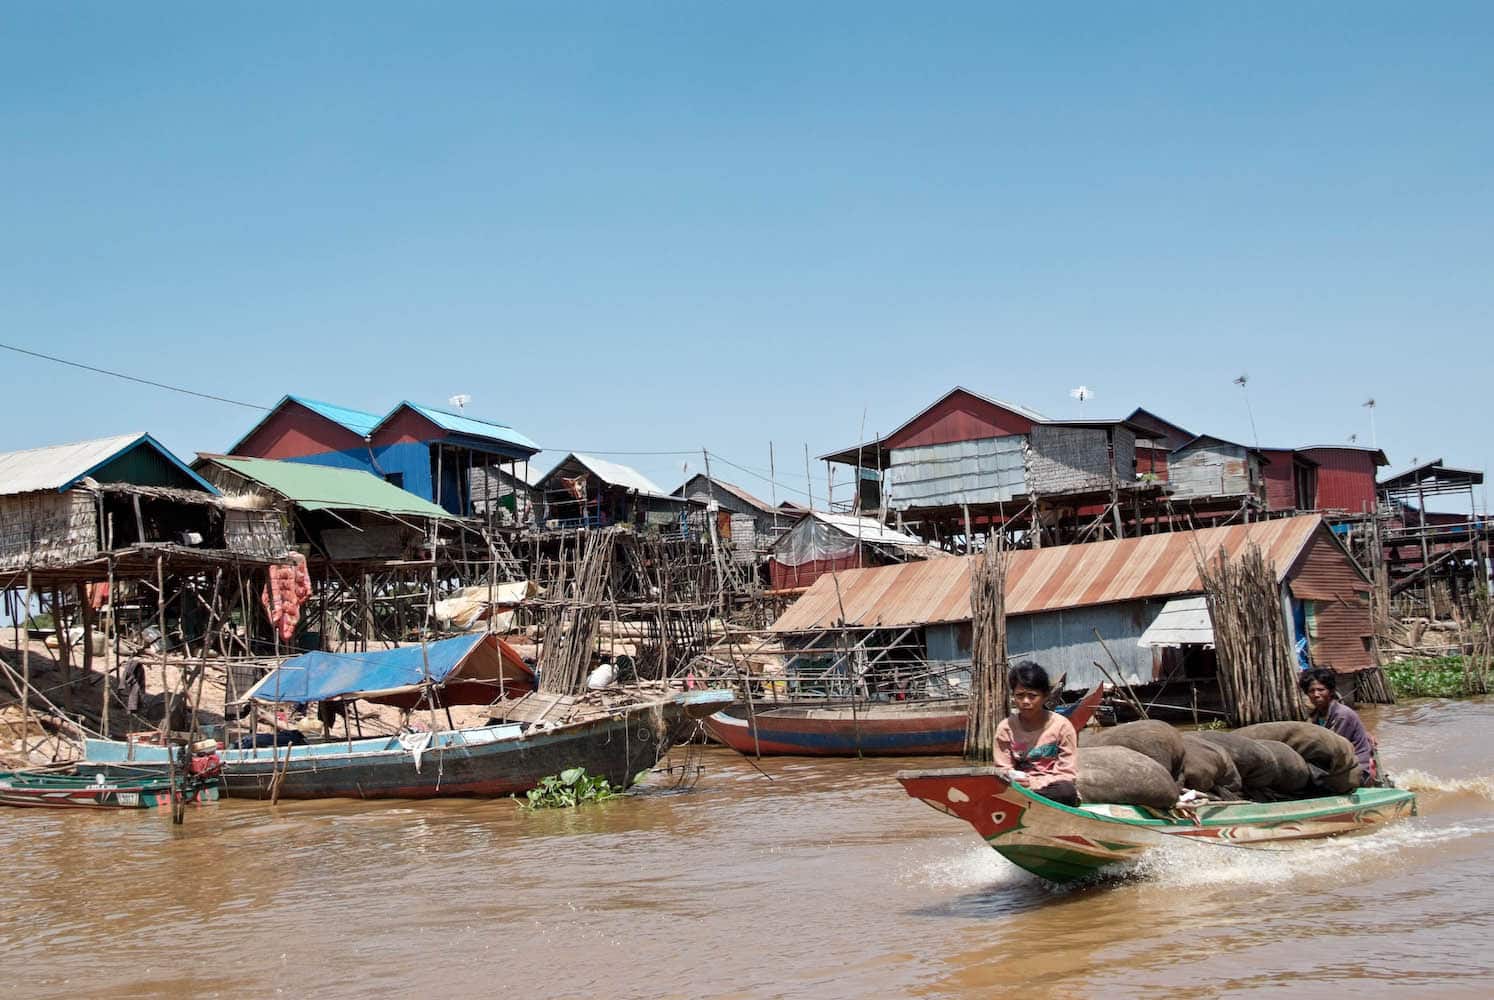 Le Cambodge : Quand partir pour un voyage inoubliable